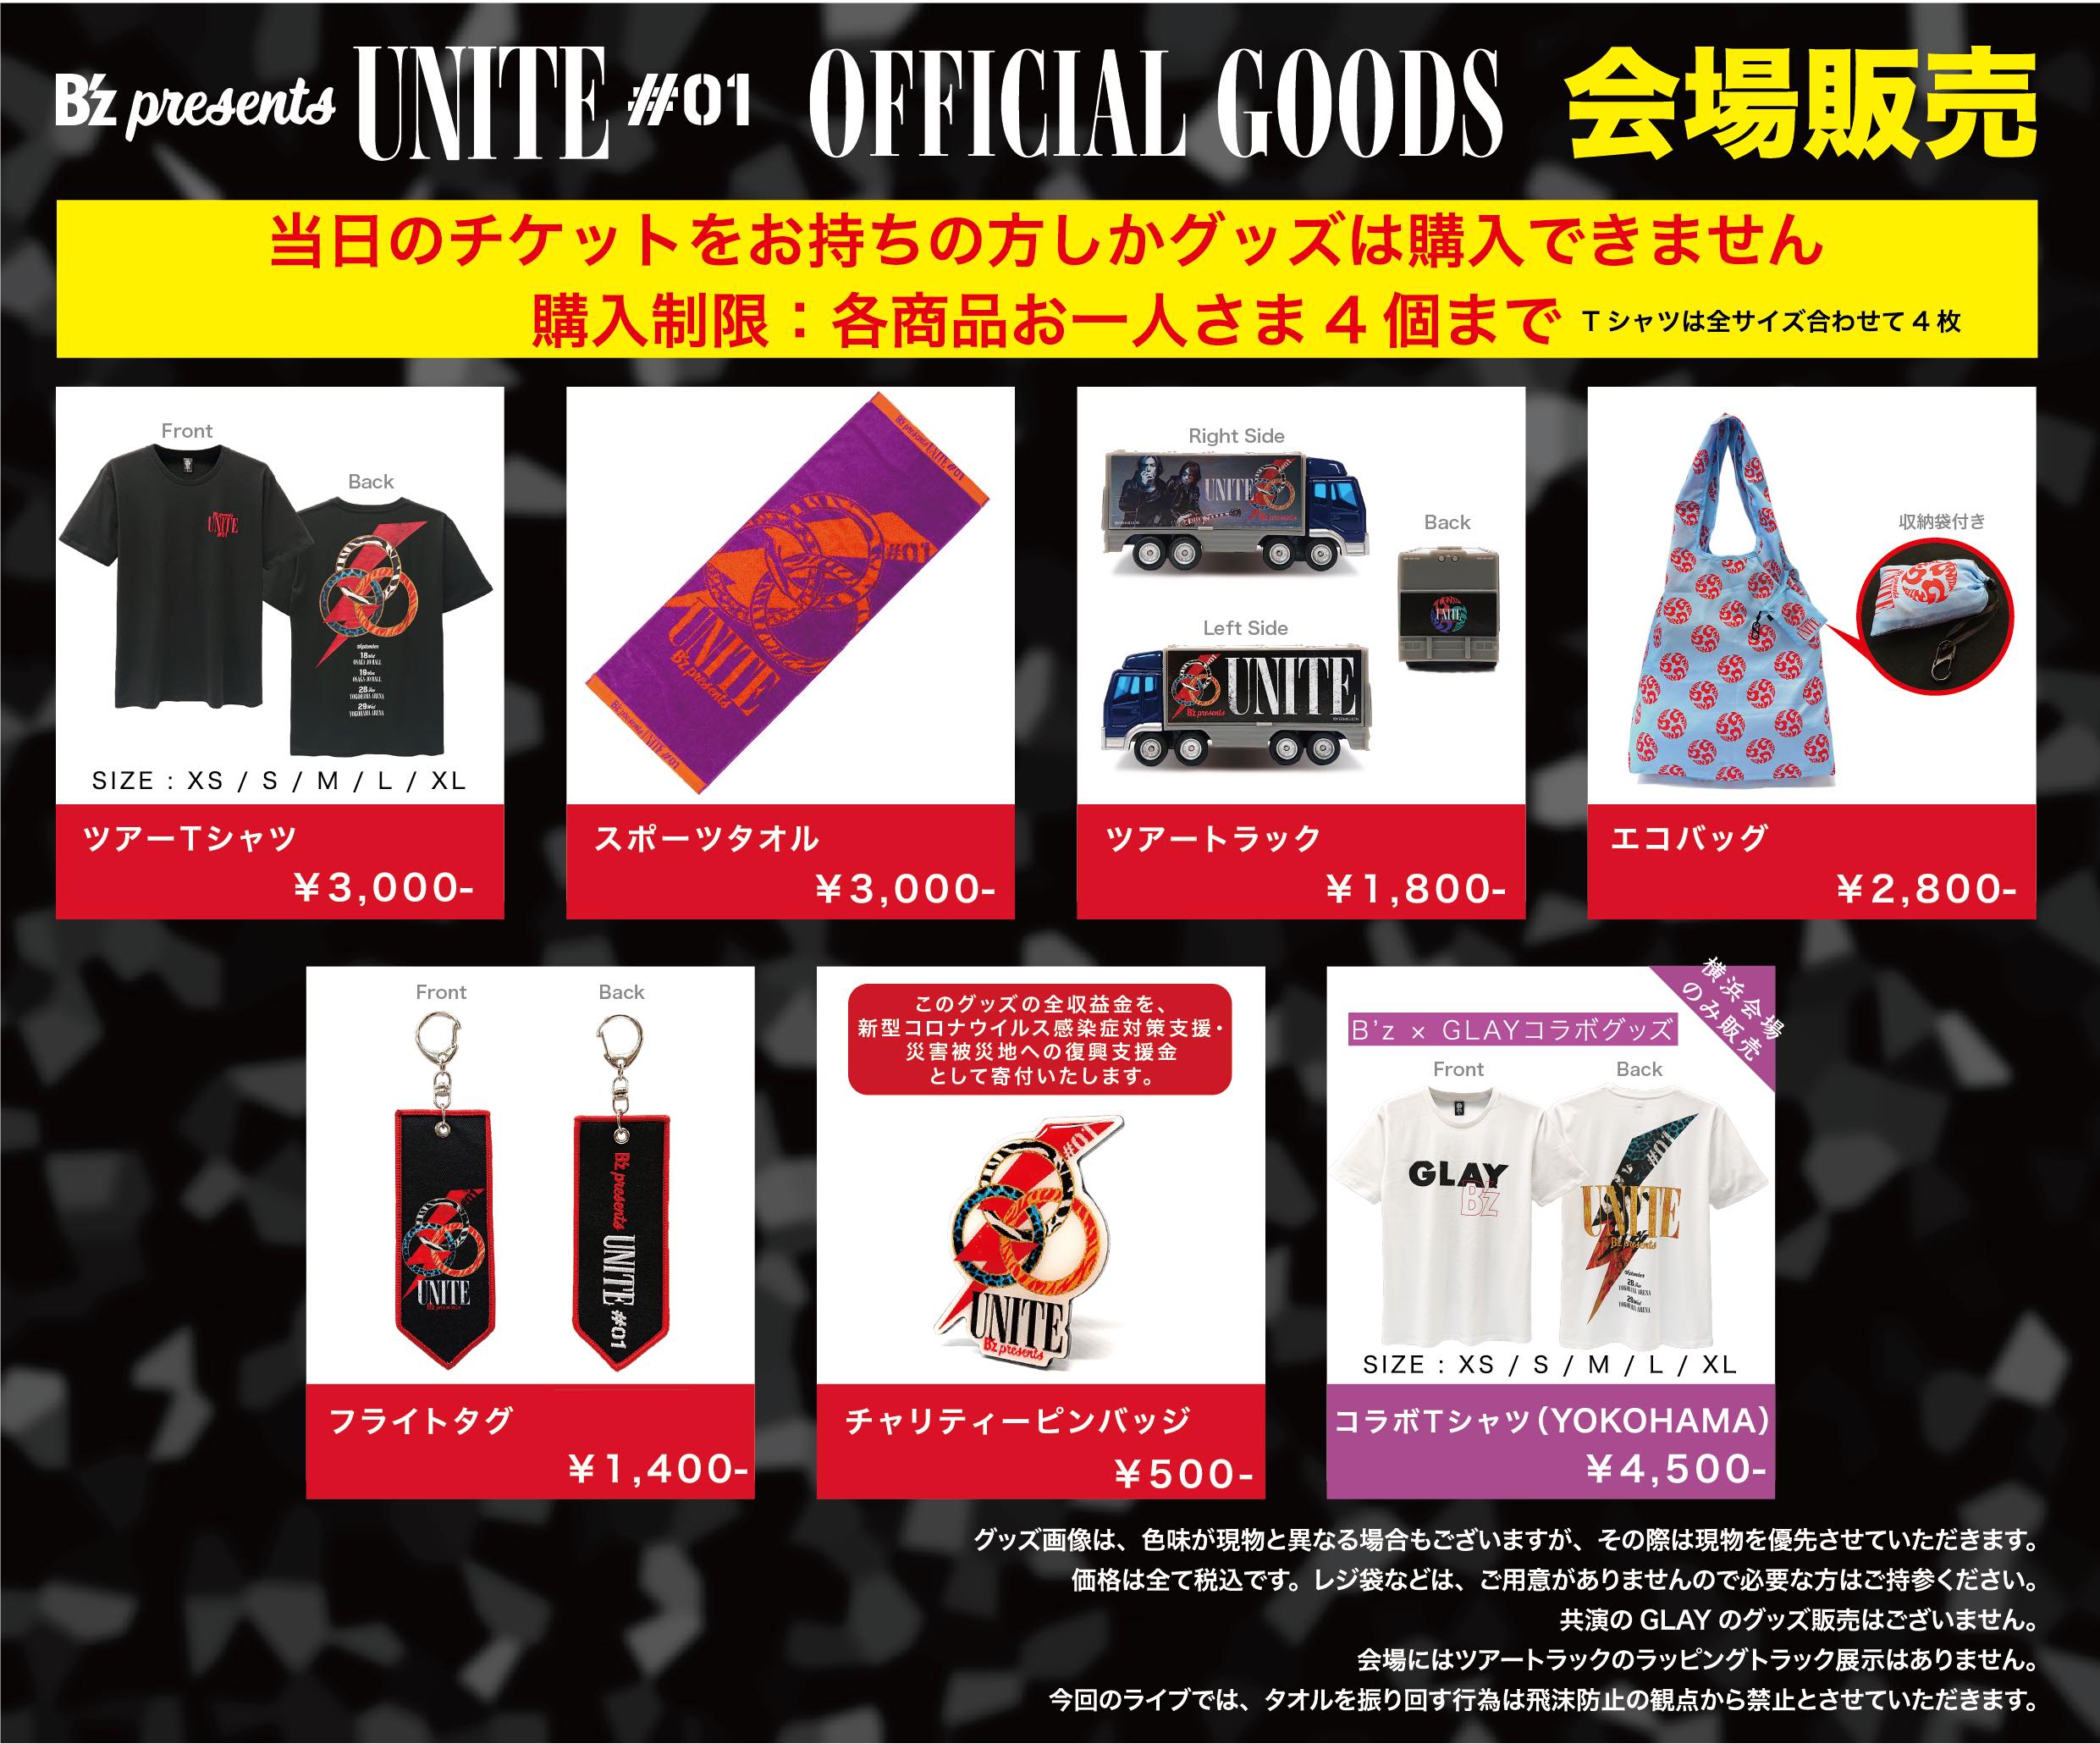 『B'z presents UNITE #01』横浜公演の会場で販売されるグッズの一覧画像